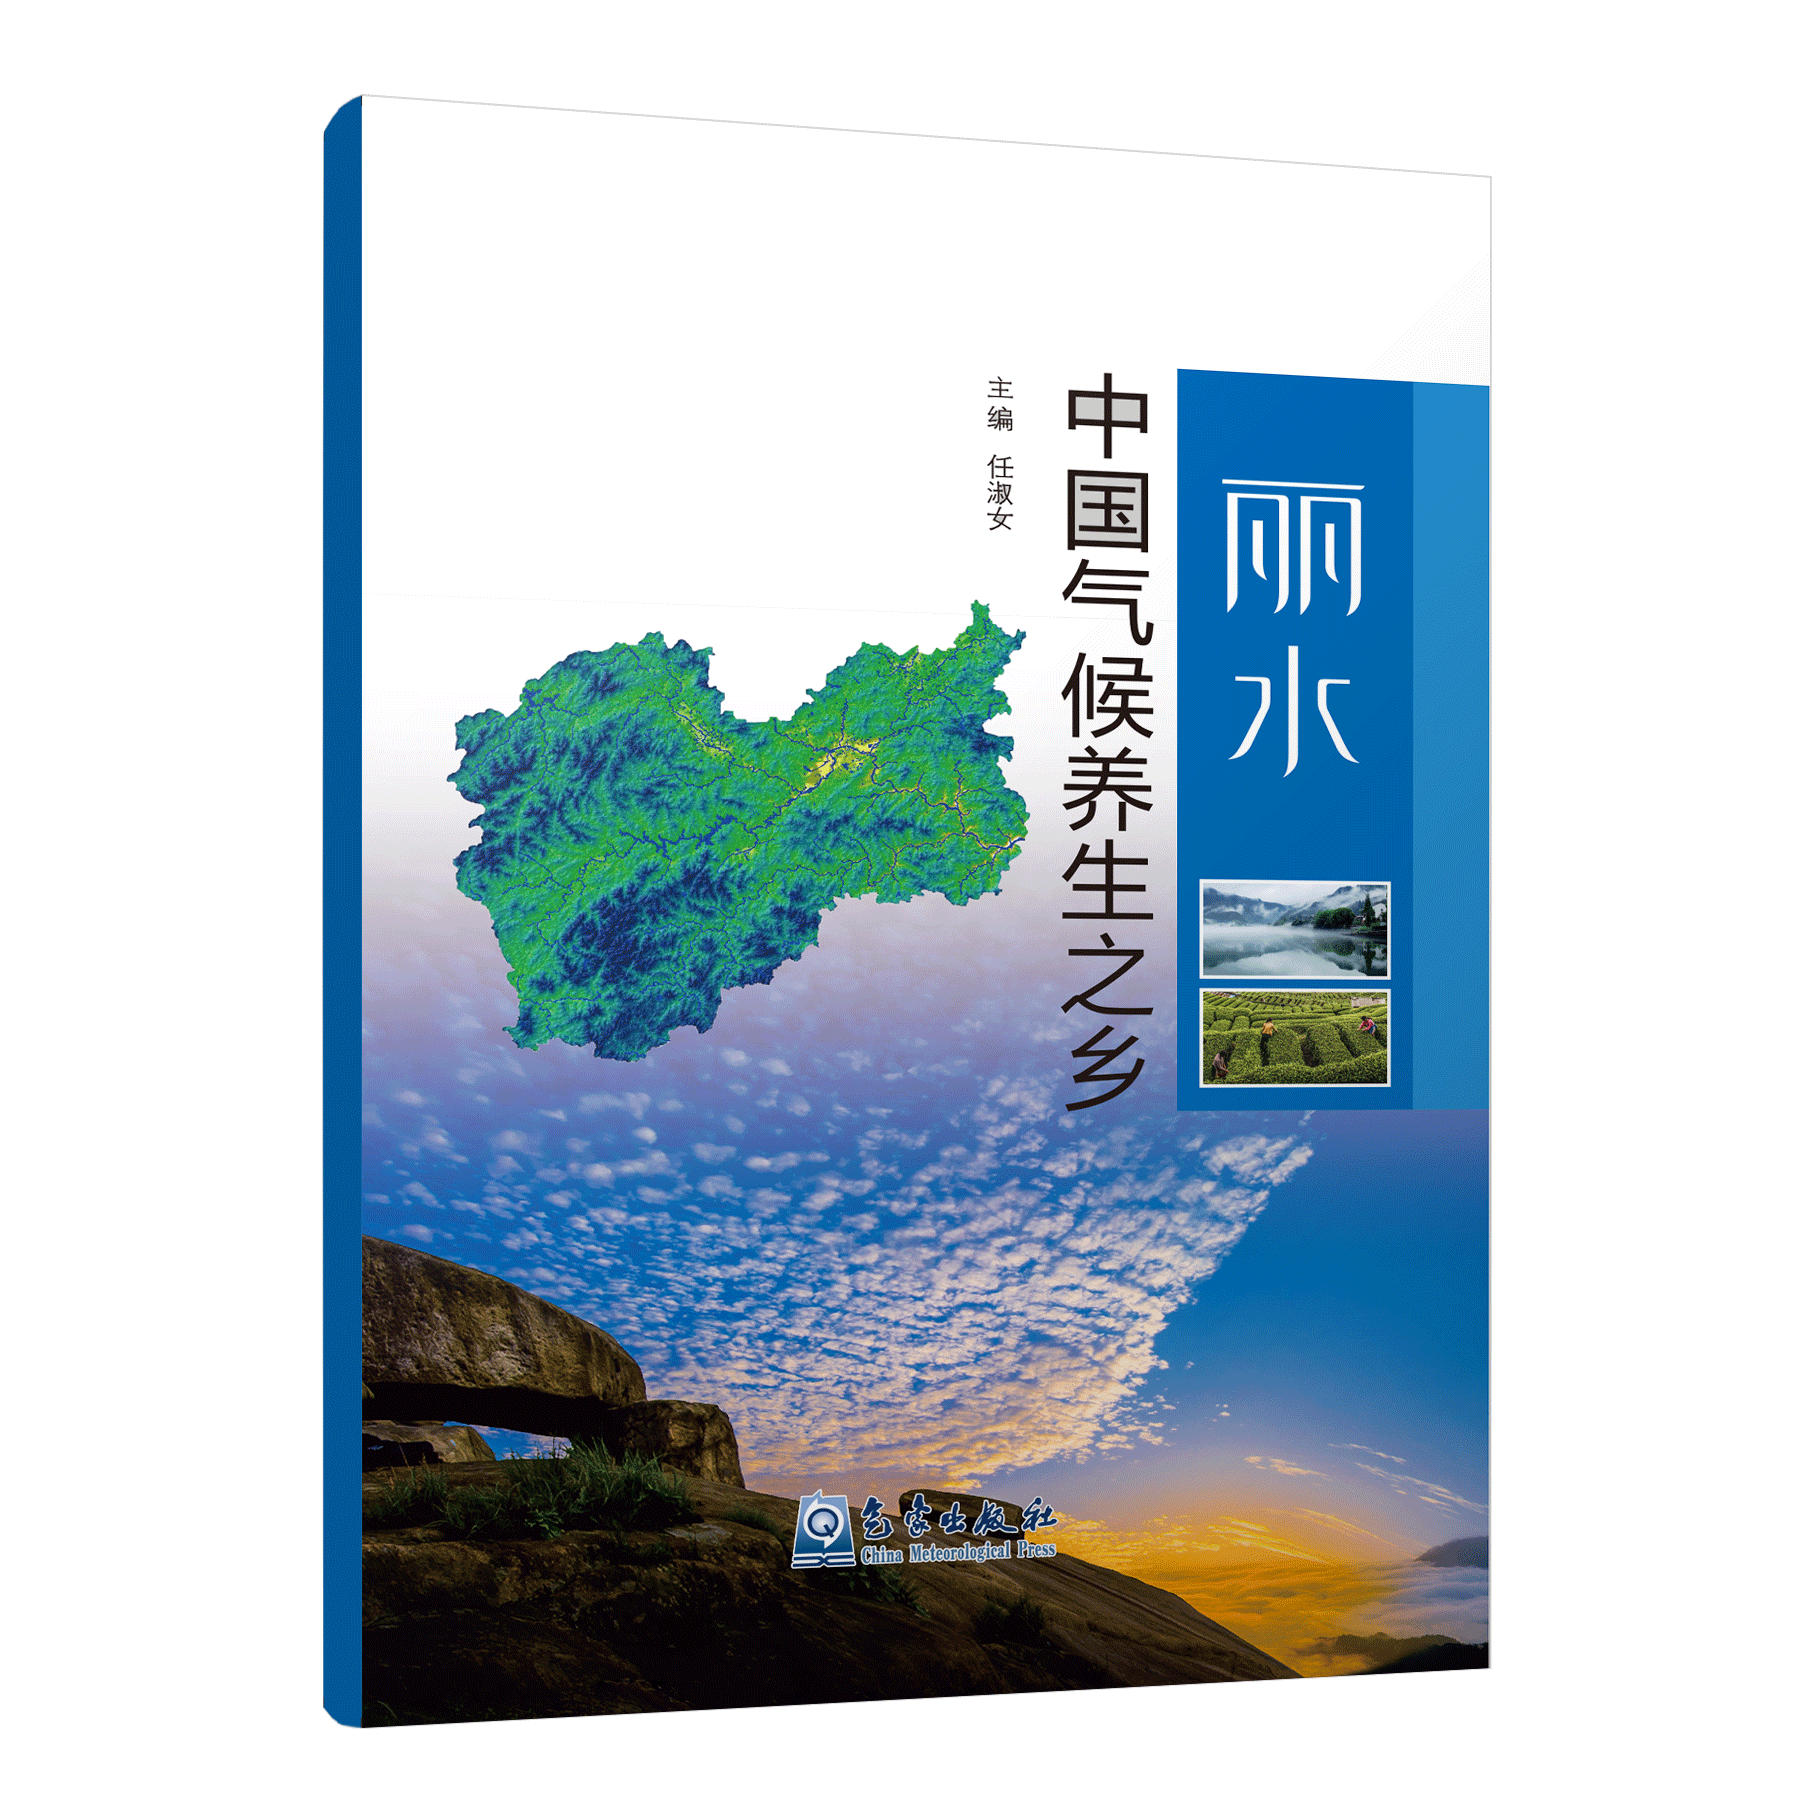 丽水•中国气候养生之乡